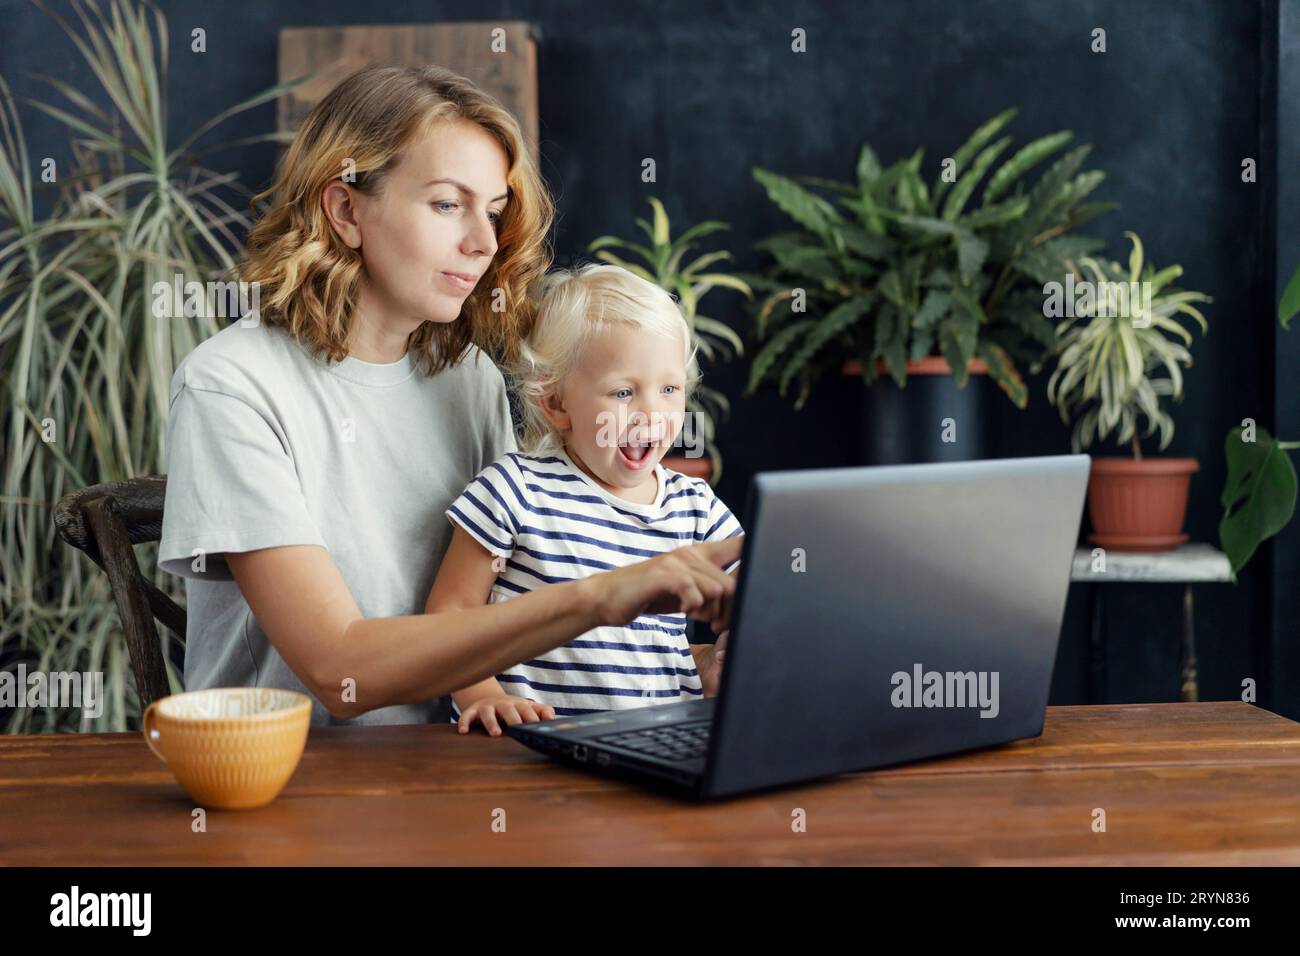 Kleine komisch überraschte Tochter und Mutter schauen sich einen Laptop an. Kindliche Unschuld und offene Gefühle. Lifestyle Familienportr Stockfoto